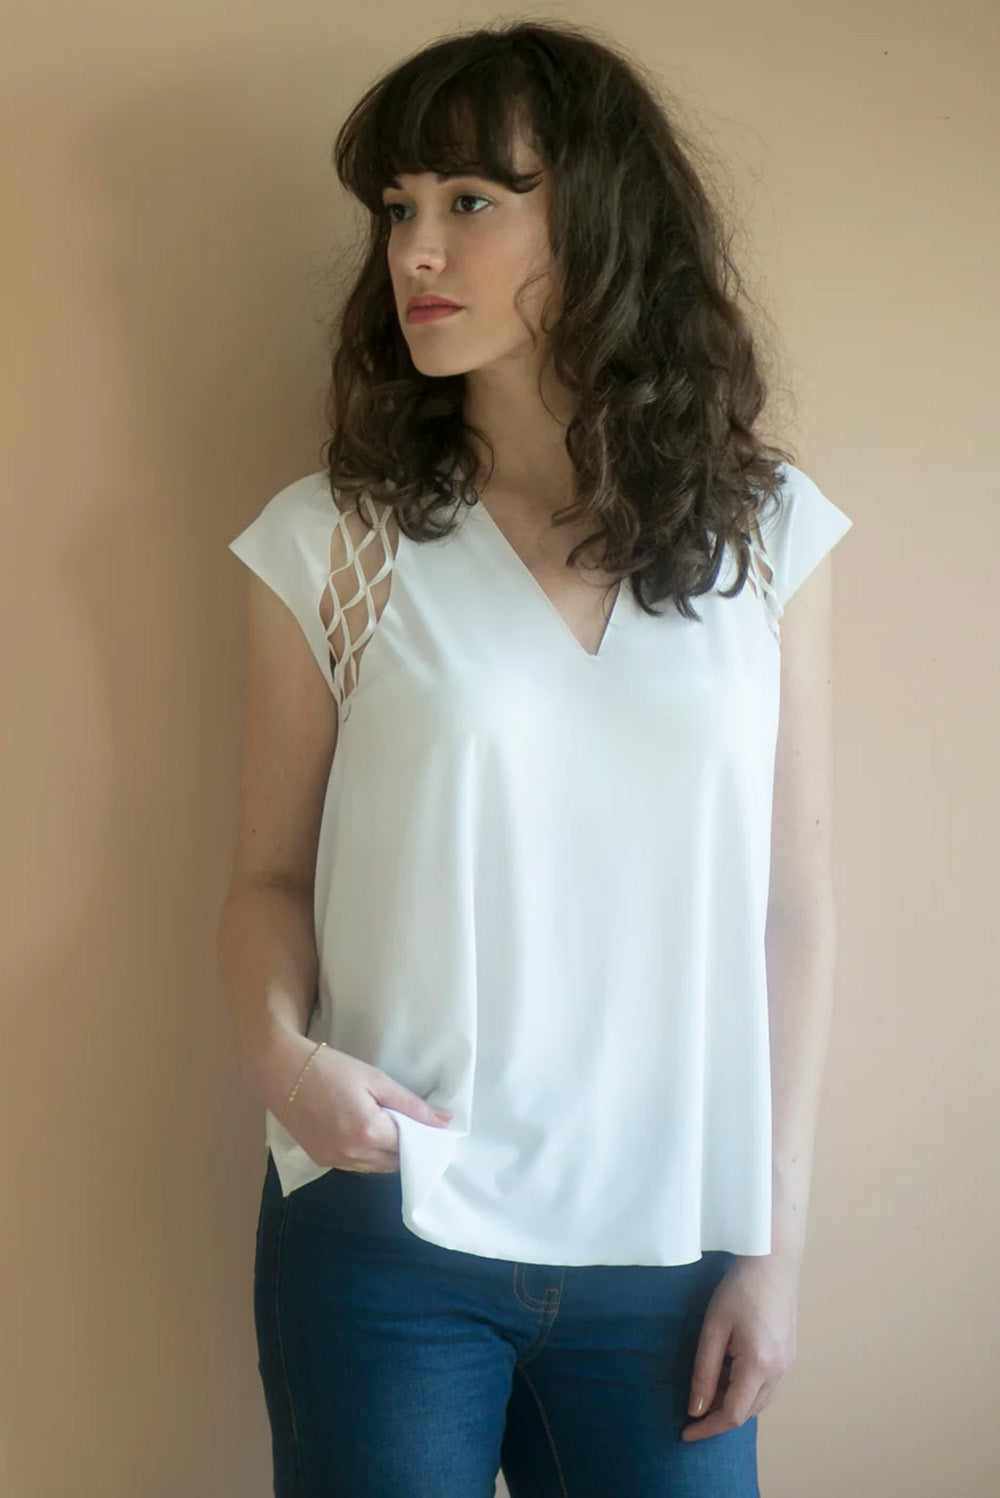 חולצת גמא - חולצה לבנה עם חיתוך מיוחד בכתף